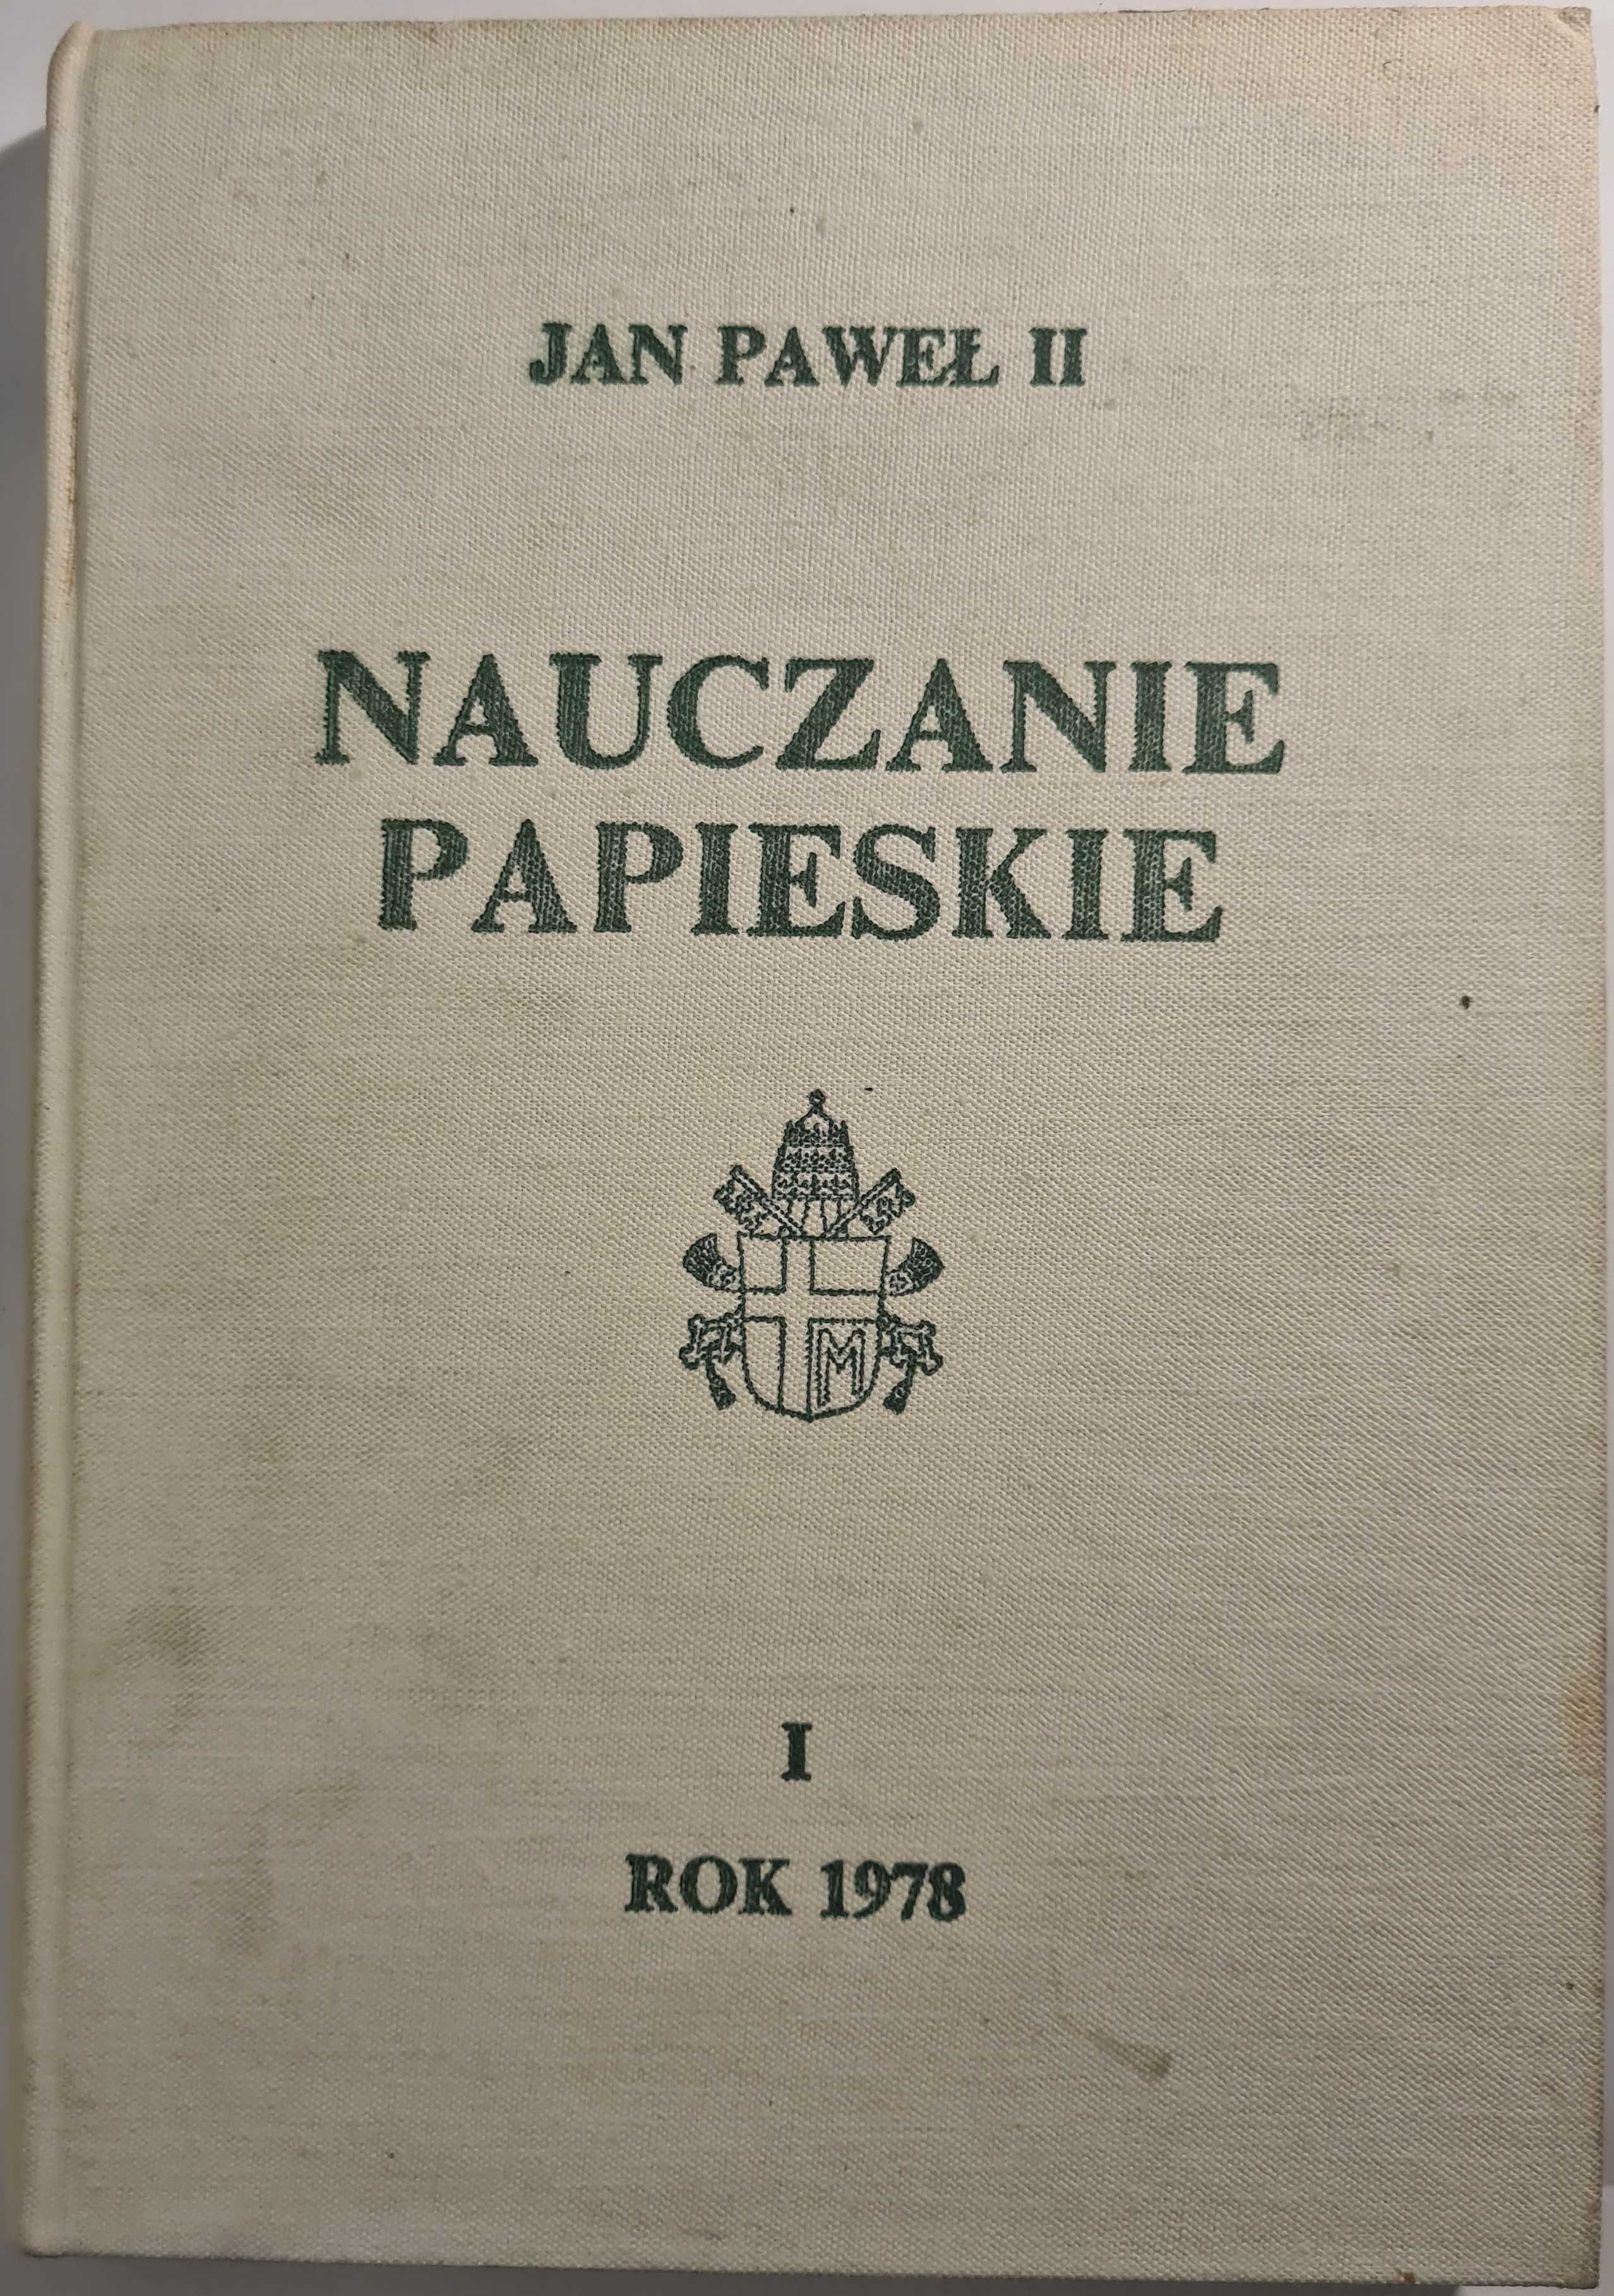 Nauczanie papieskie Jan Paweł II